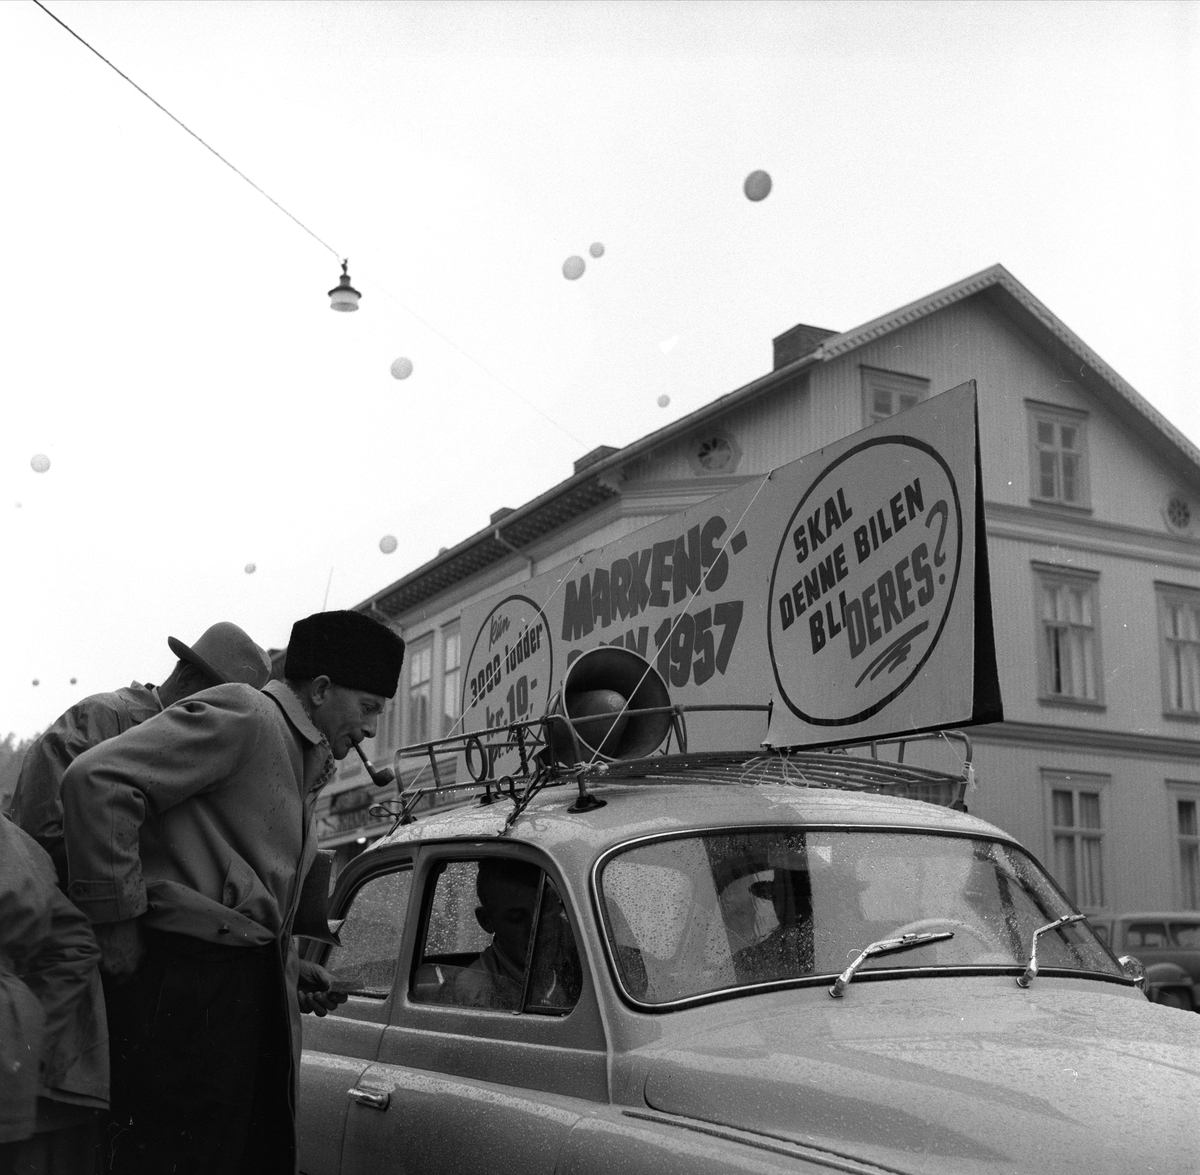 Gjøvik-Marken, Gjøvik, Oppland, 24.10.1957. Reklame for bilsalg, bil og folk i gata.